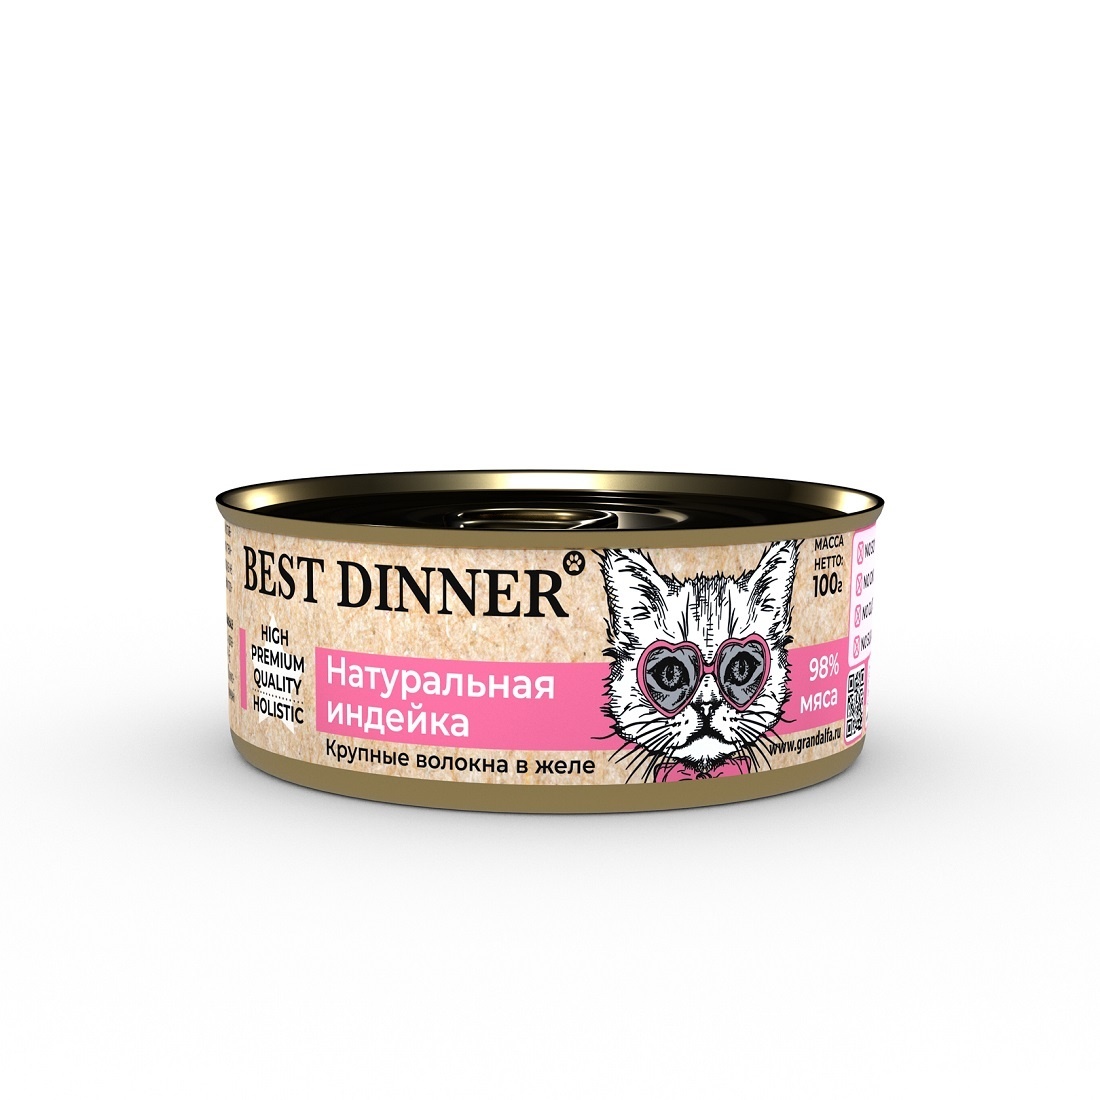 Best Dinner Best Dinner консервы для кошек в желе Натуральная индейка (100 г) best dinner best dinner консервы натуральный ягненок 100 г